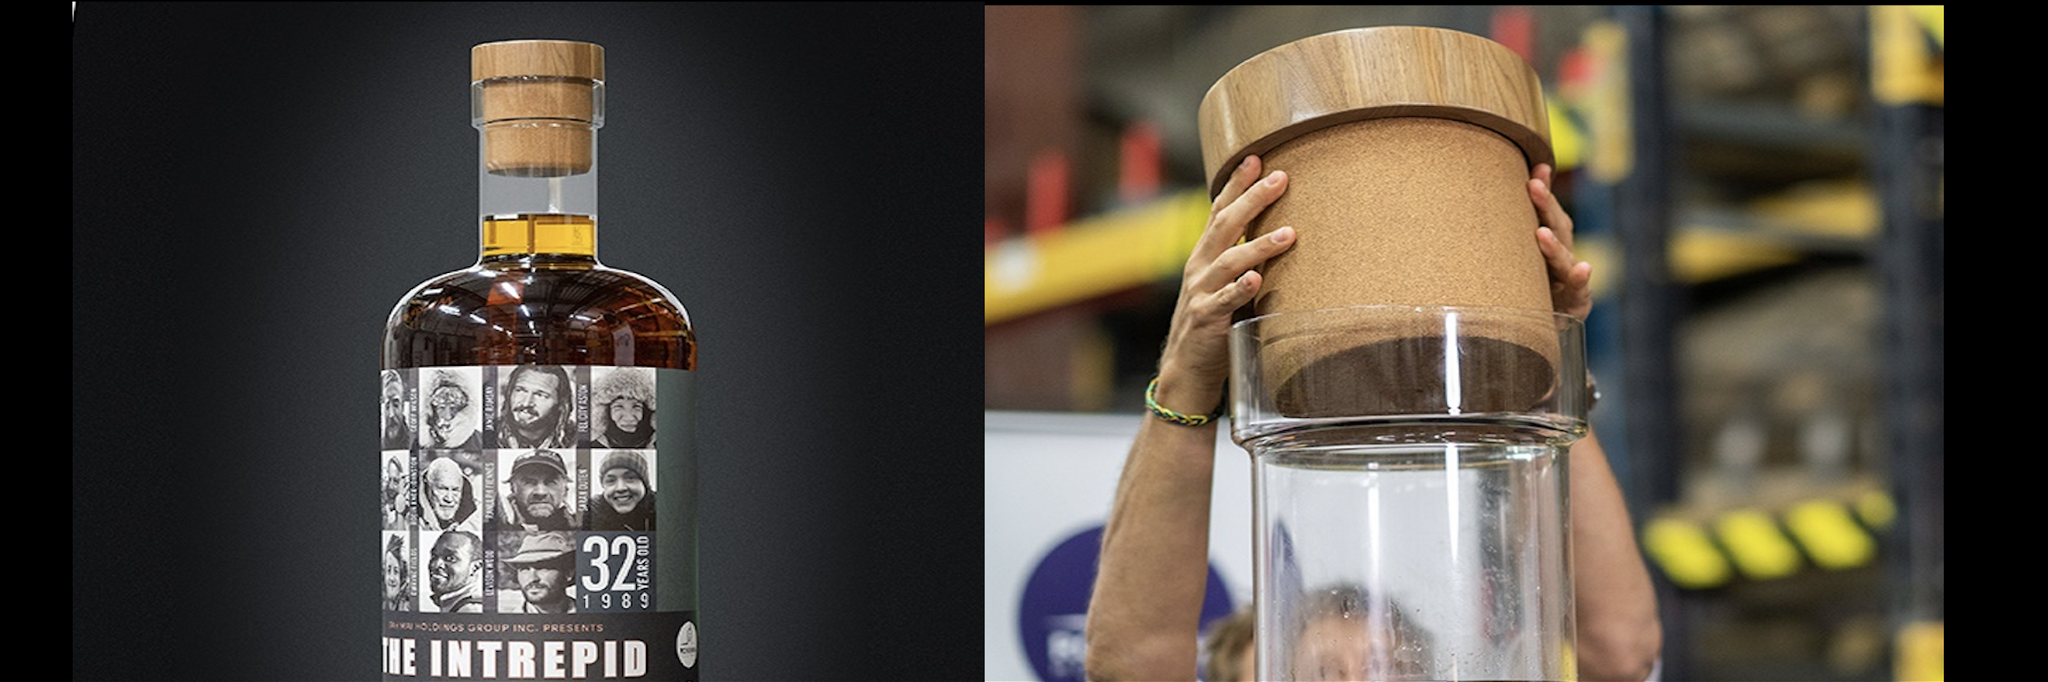 «The Intrepid» – die grösste Scotch-Flasche der Welt